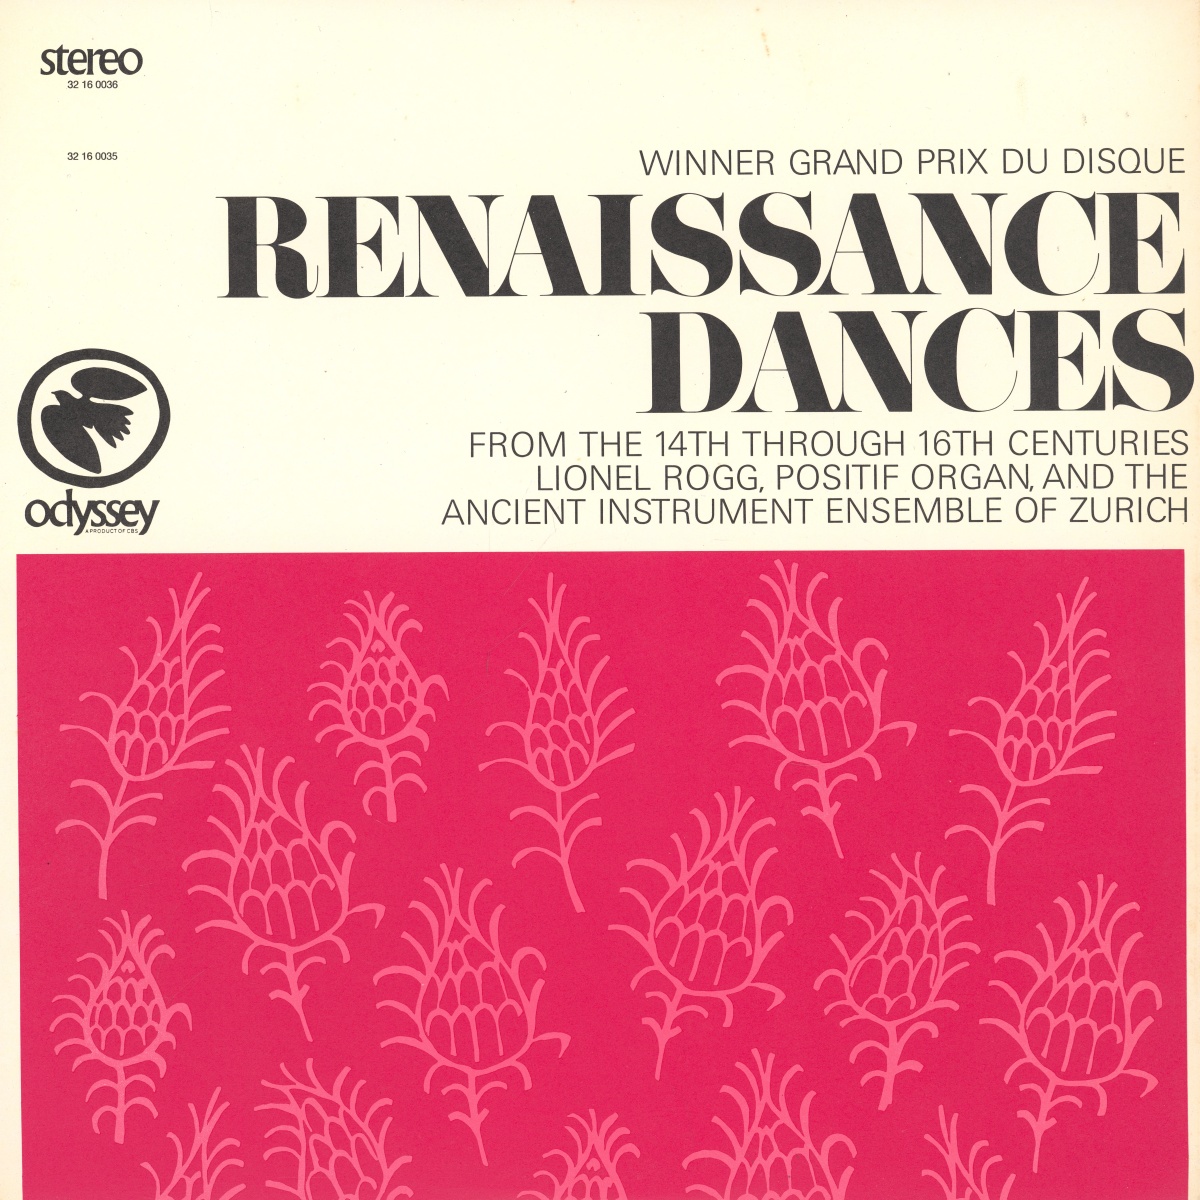 Recto de la pochette du disque Odyssey 32 16 0036 (Renaissance Dances from the 14th through 16th Centuries)